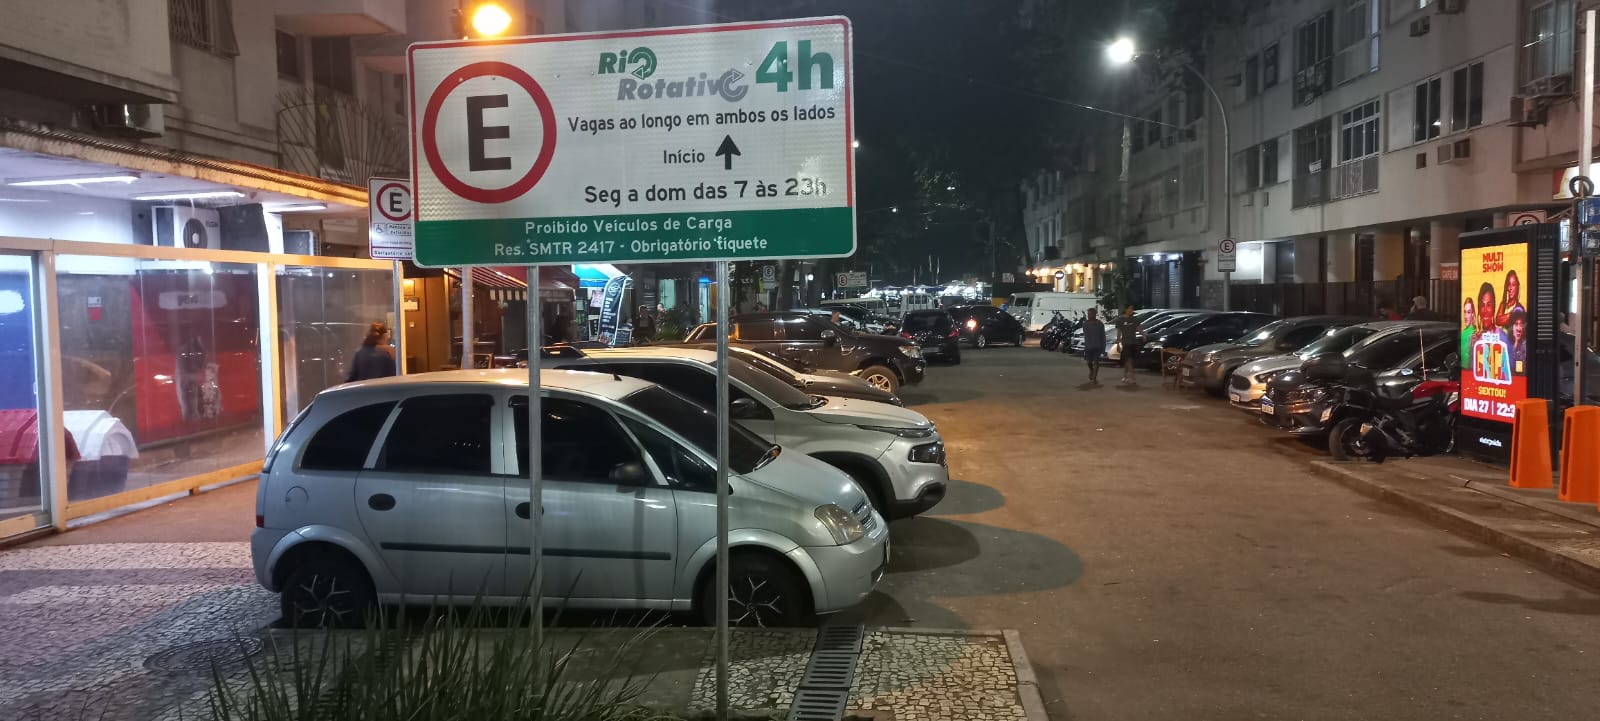 Estacionamento em Copacabana sofrerá mudanças